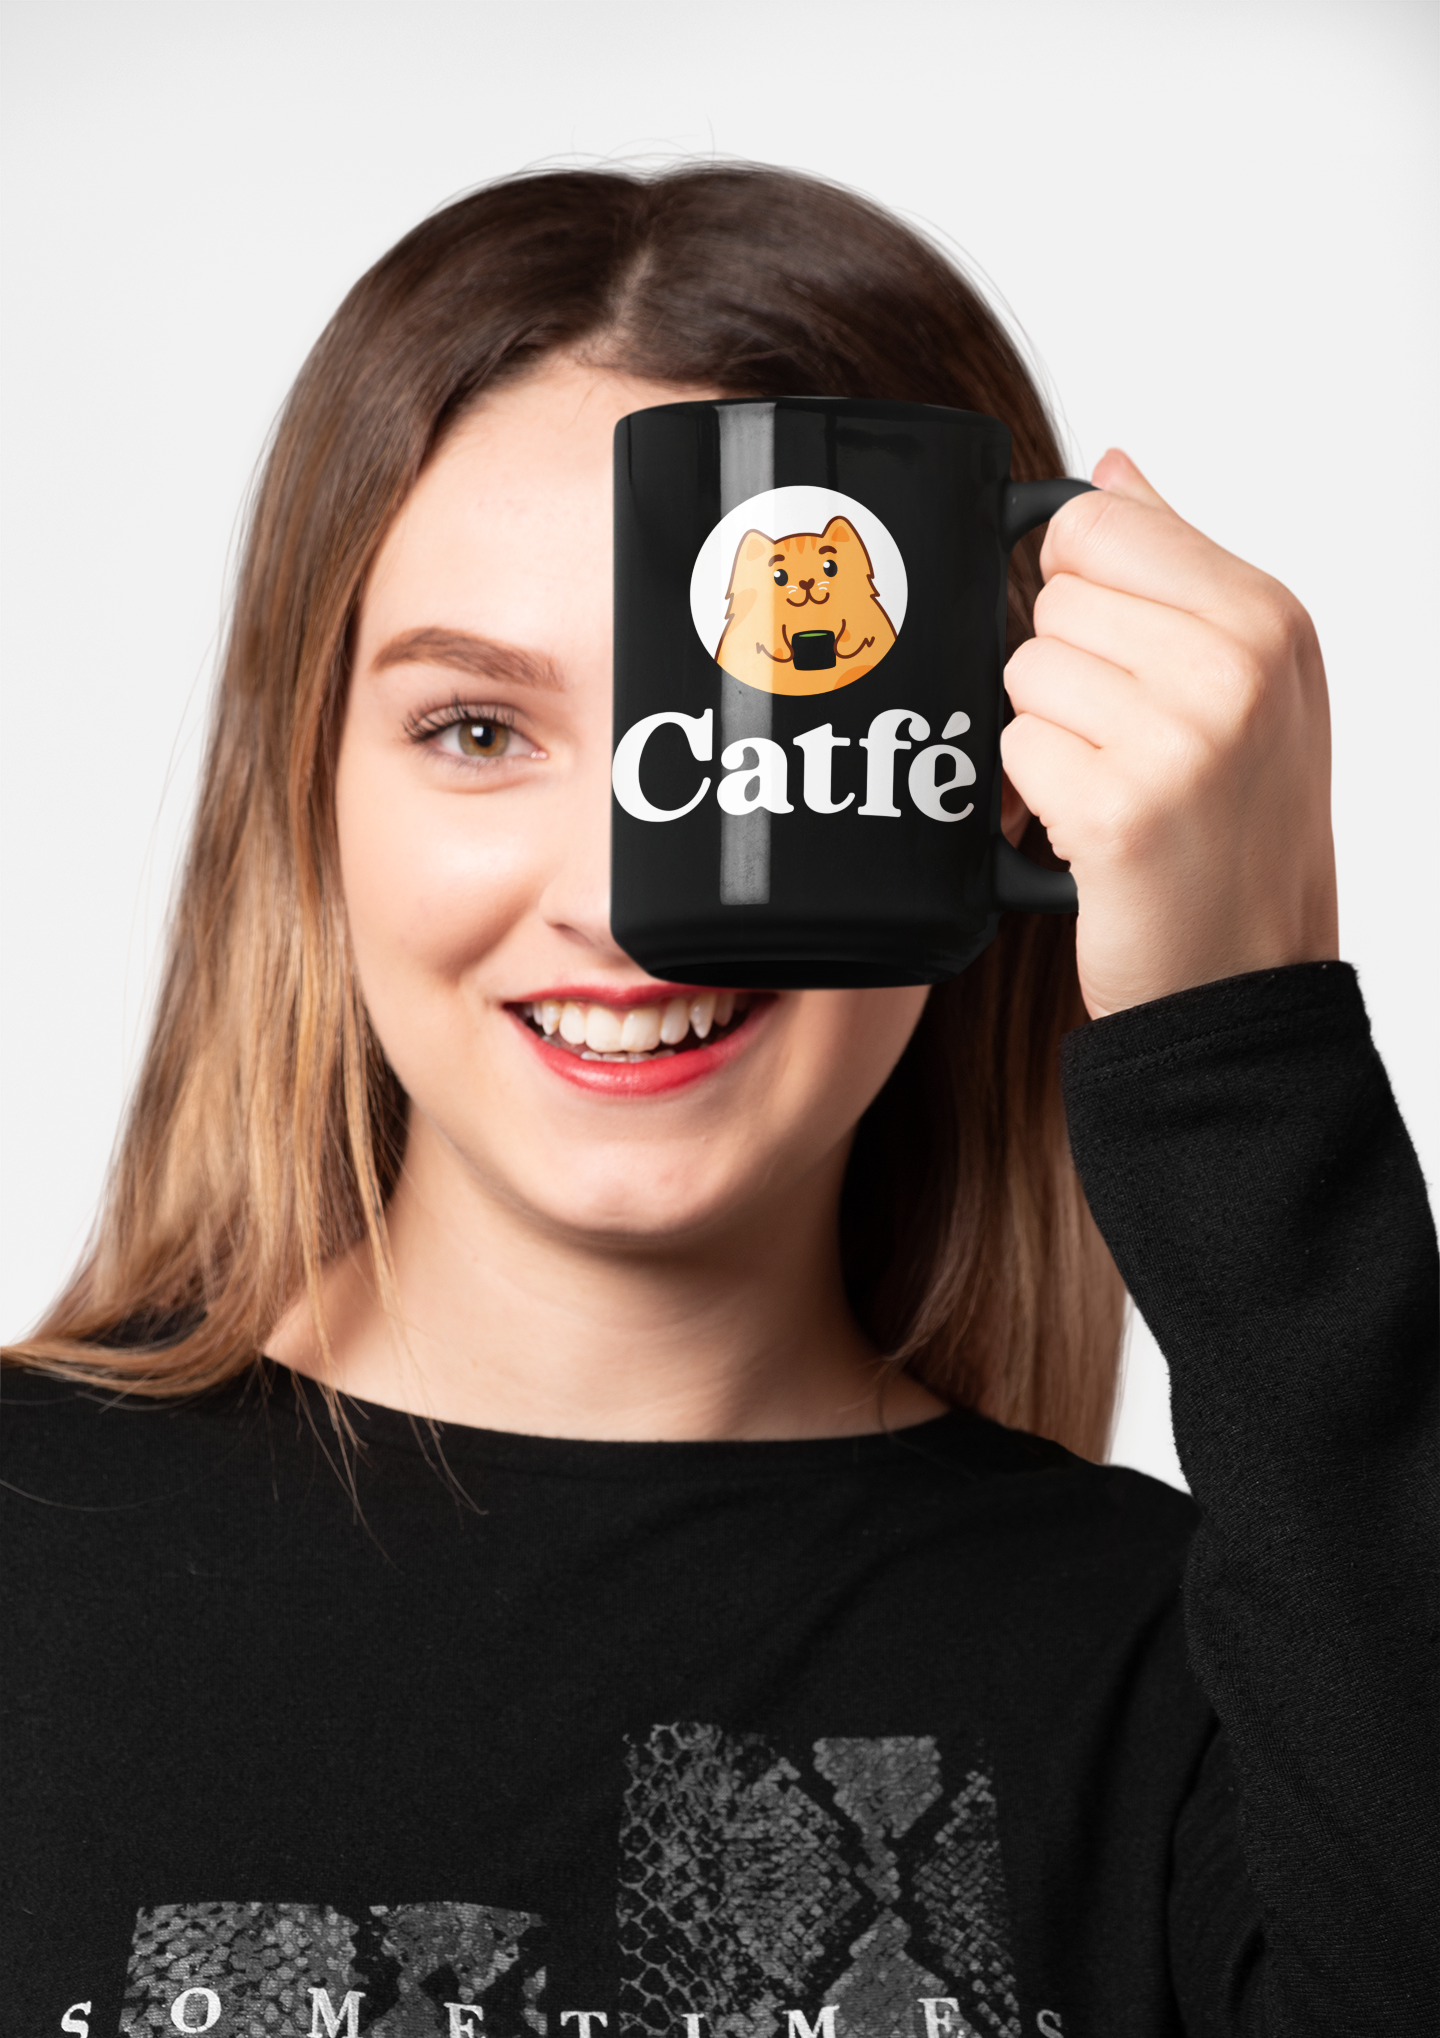 Catfé Classic Mug in Black